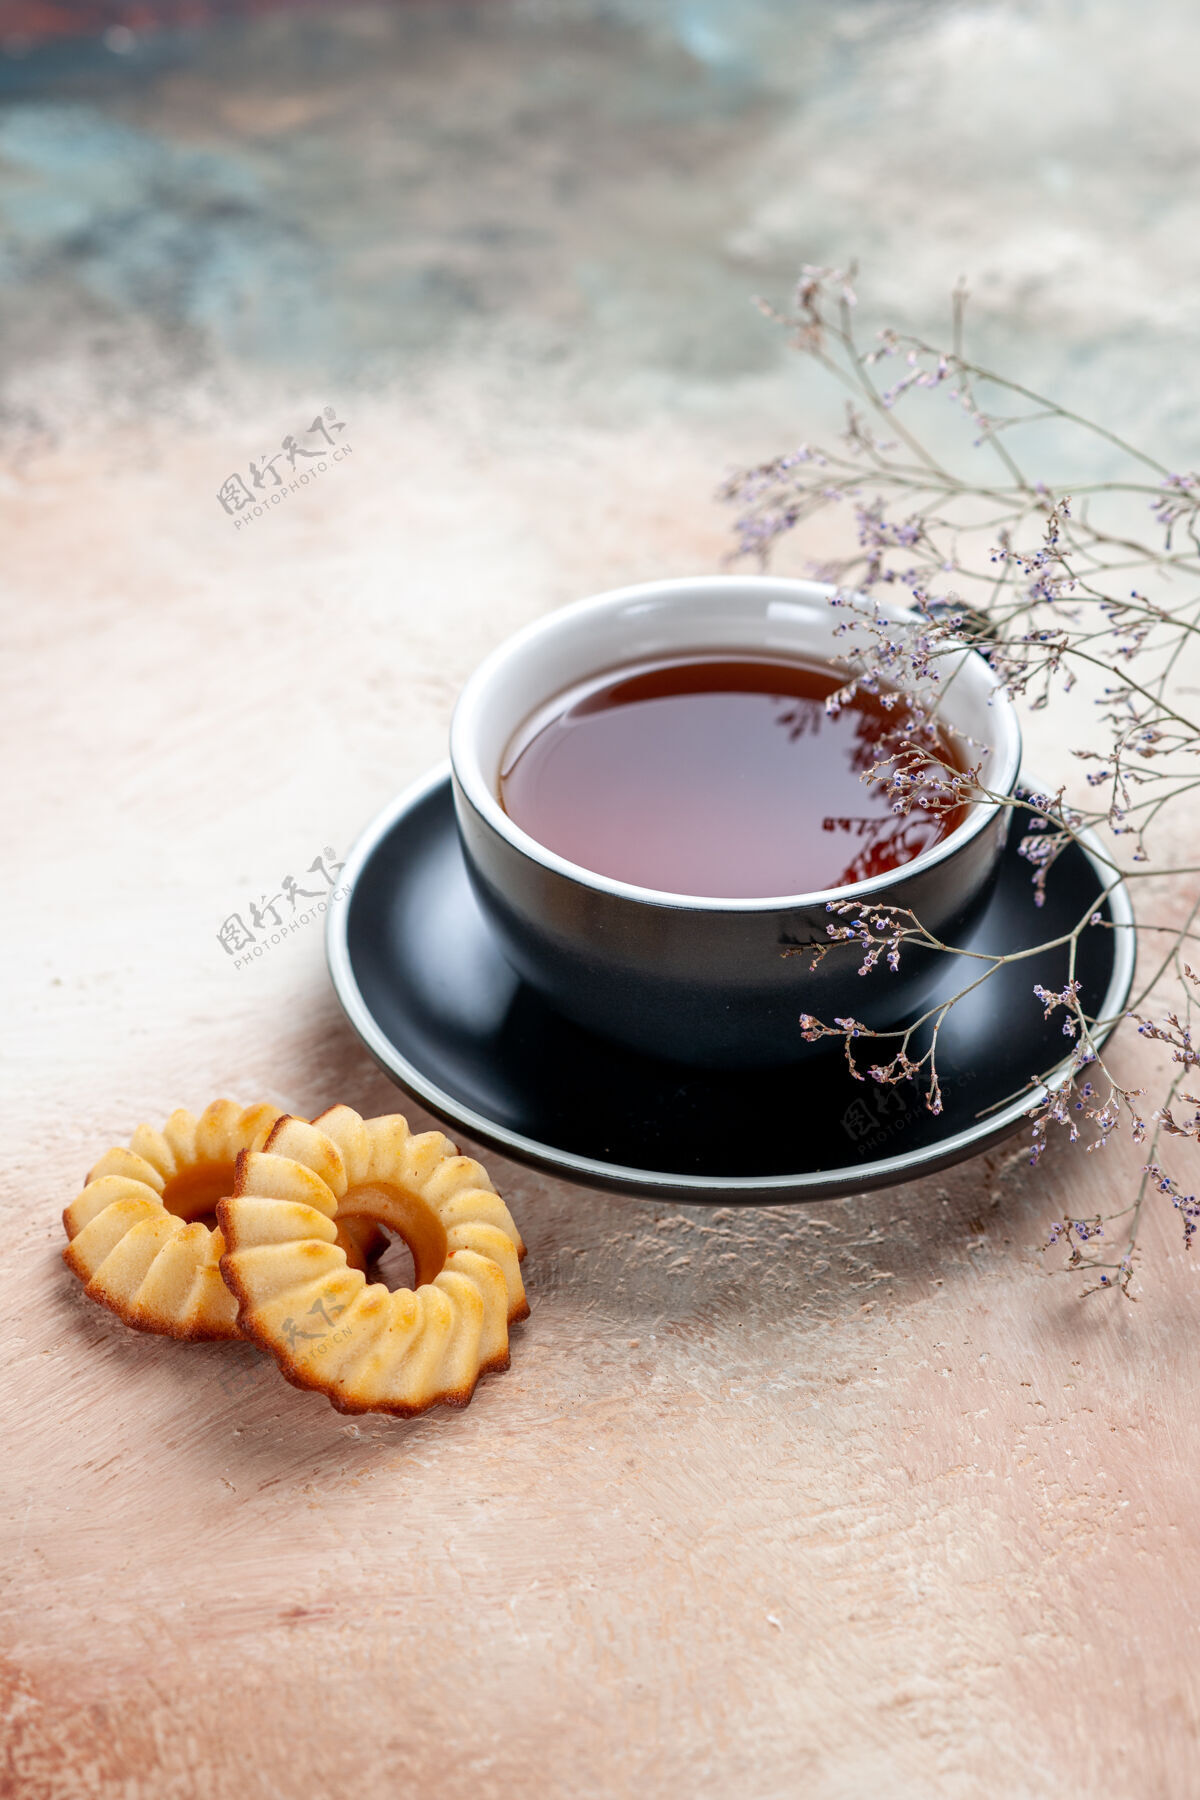 早餐侧视一杯红茶一杯茶饼树枝茶碟曲奇早晨